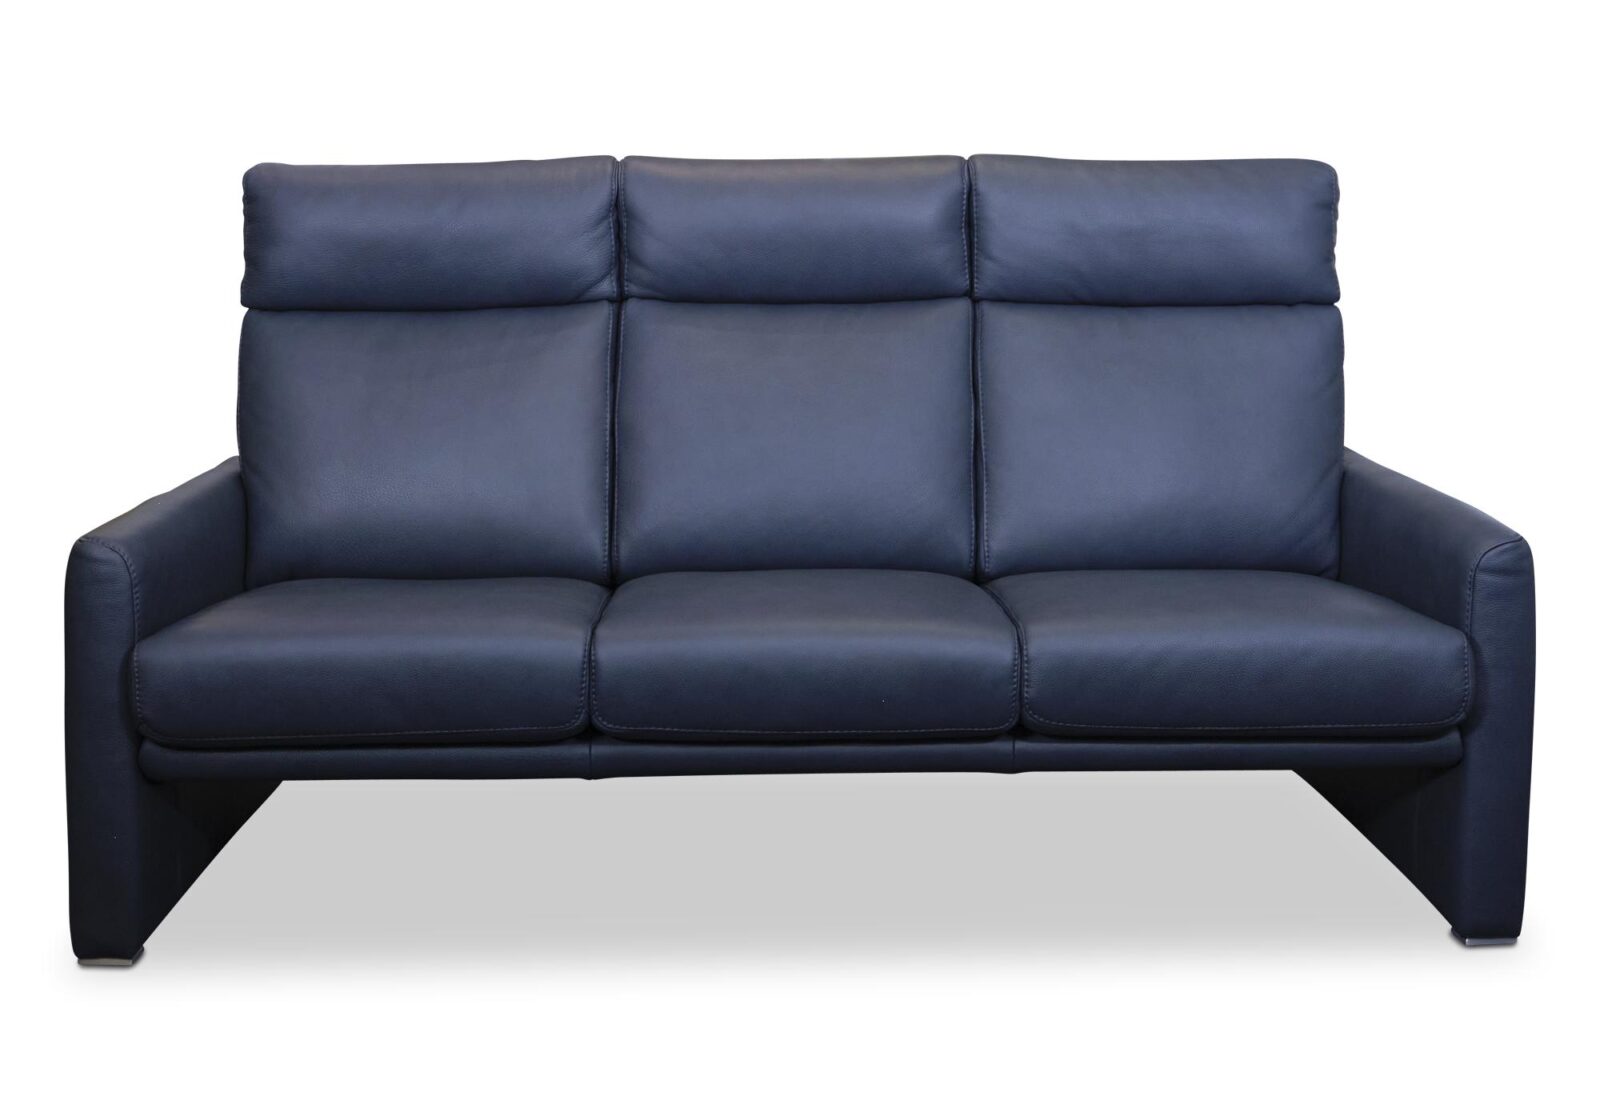 3er Sofa Cosmo mit hohem Rücken. Bezug: Leder. Farbe: Blau. Erhältlich bei Möbel Gallati.